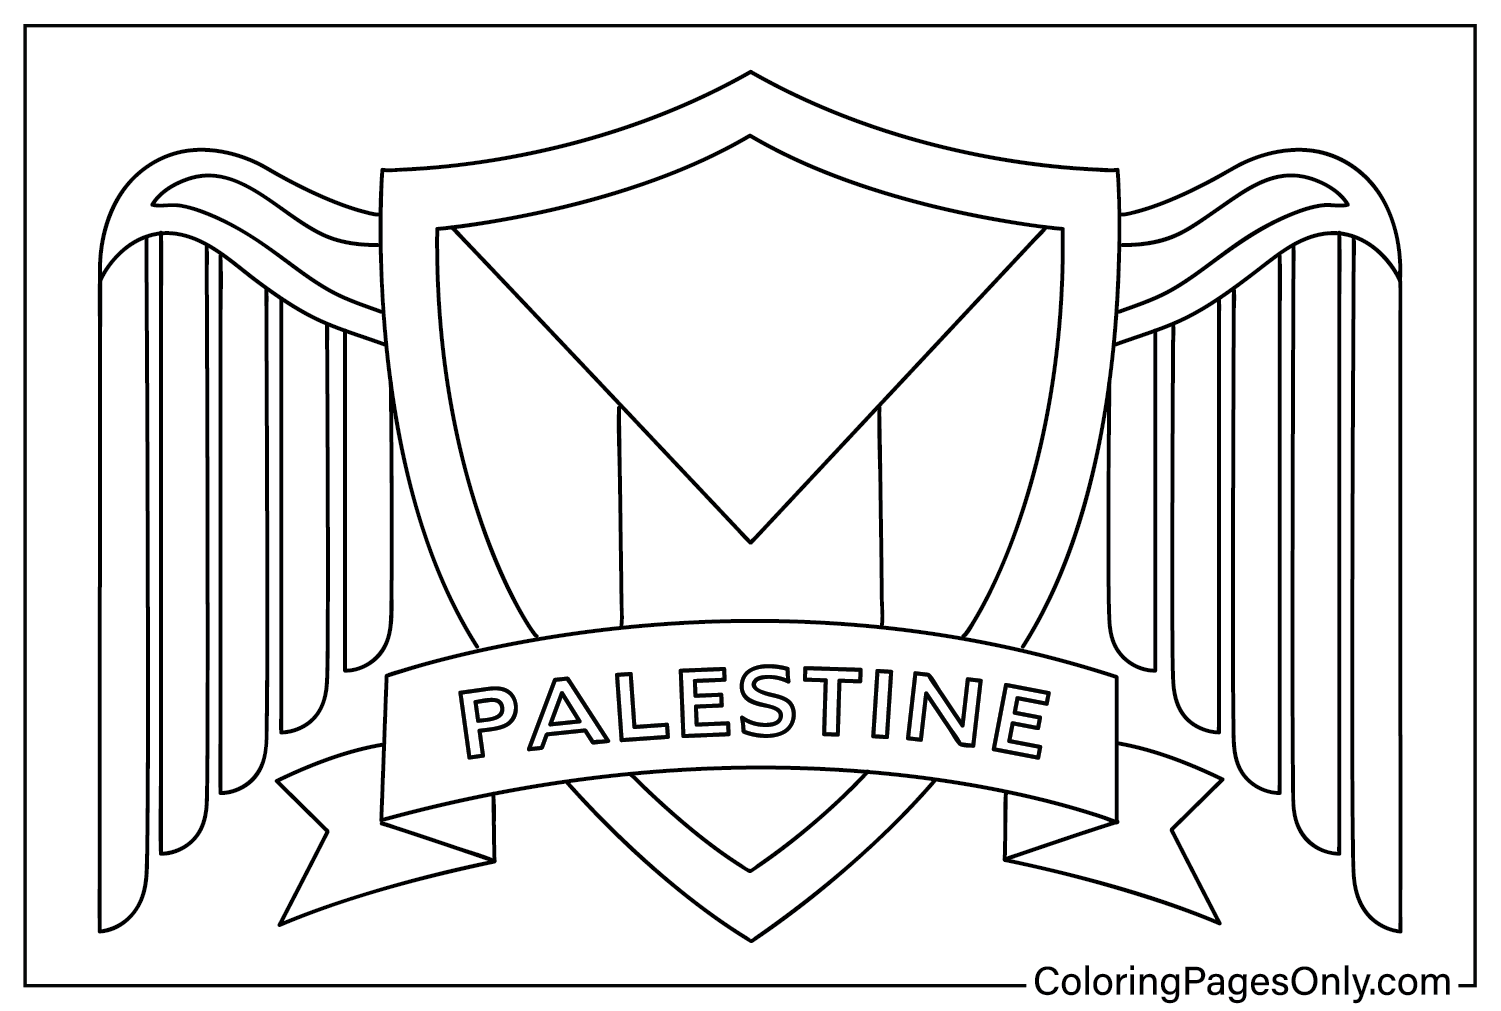 Palestina kleuring